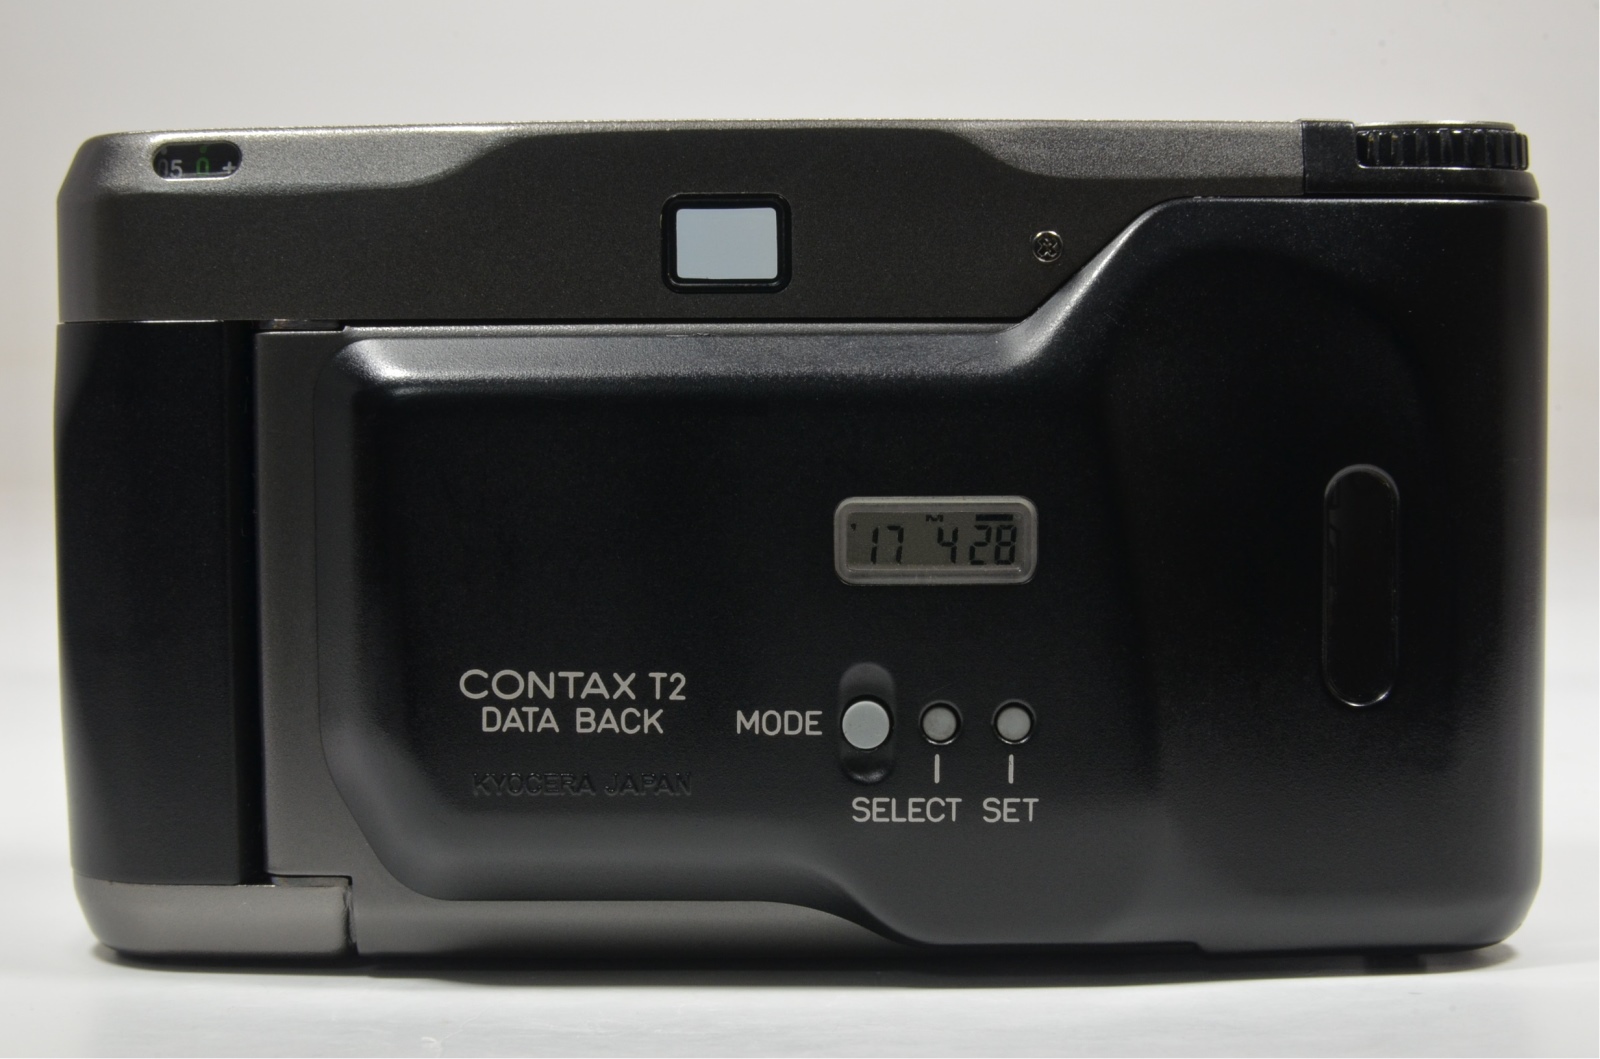 contax t2 data back titanium black p&s 35mm film camera